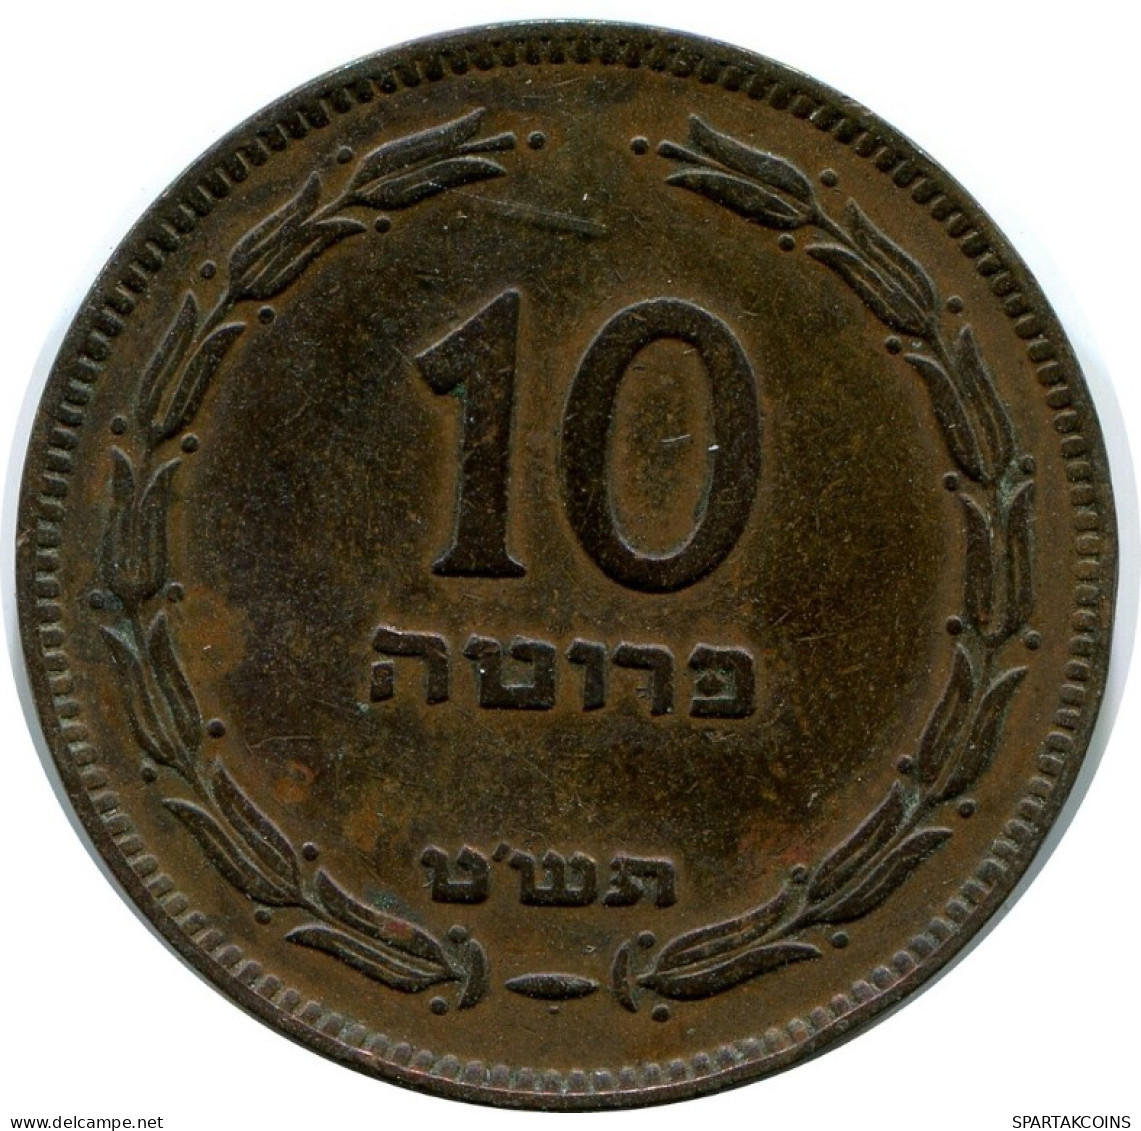 10 PRUTA 1949 ISRAEL Coin #AH866.U.A - Israël